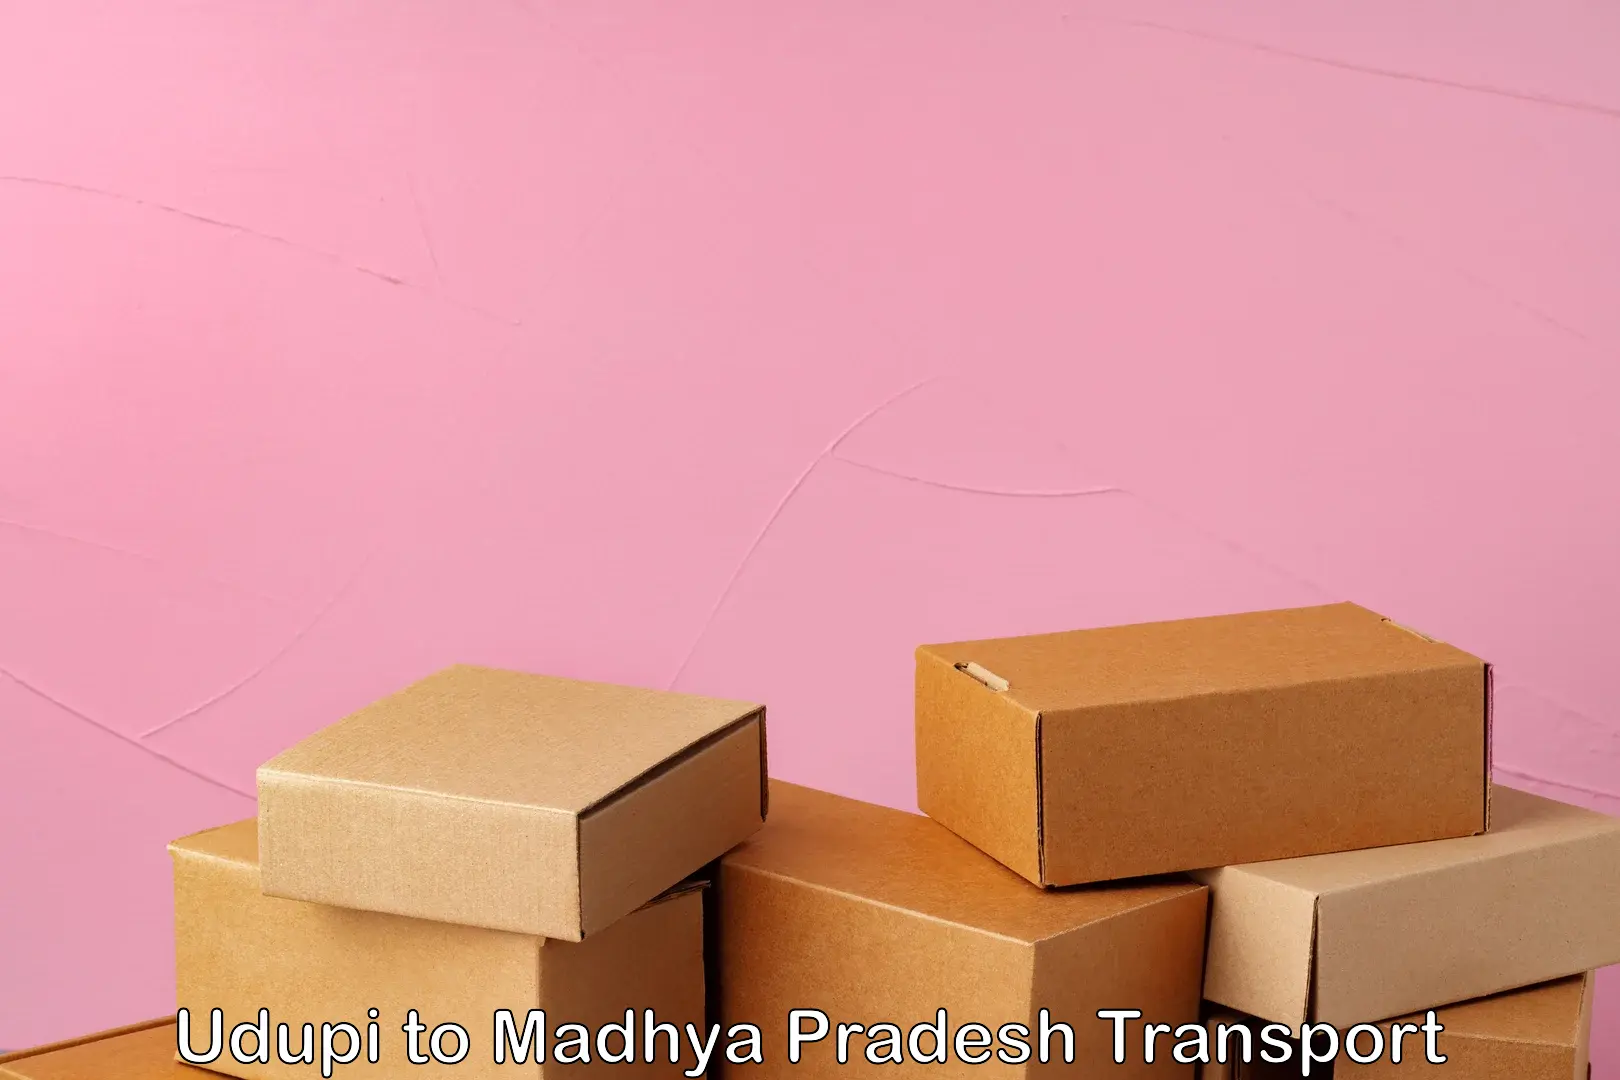 Cargo transportation services Udupi to Jaisinghnagar